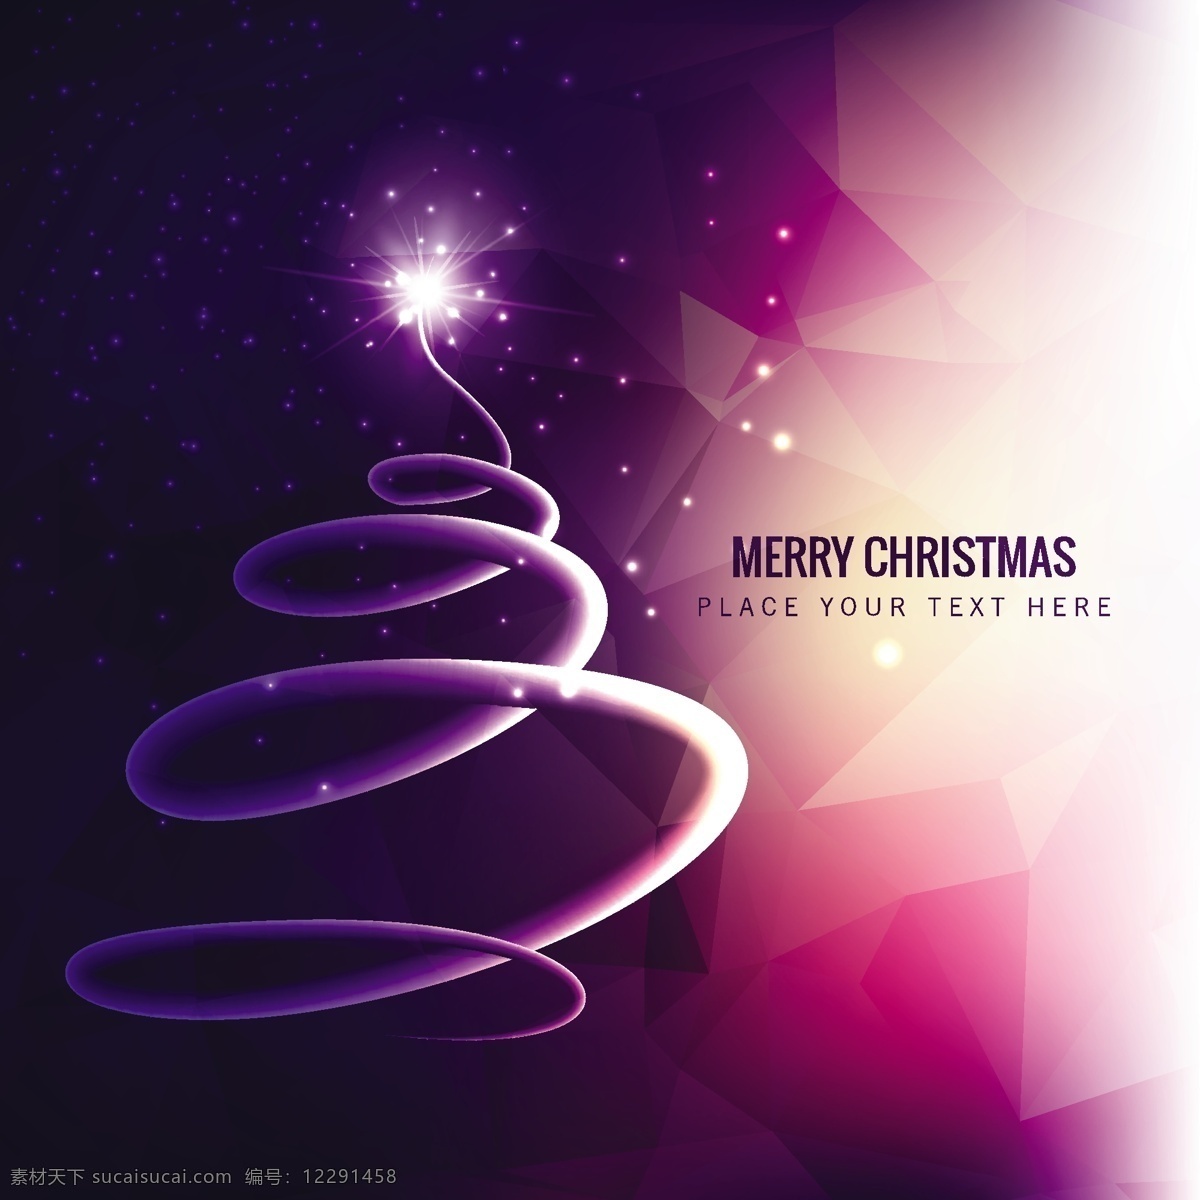 紫色 色调 多边形 圣诞 背景 圣诞树 抽象 几何 圣诞快乐 冬天快乐 圣诞背景 壁纸 圣诞节 庆祝的 紫色的 几何背景 紫色的背景 冬天的背景 黑色